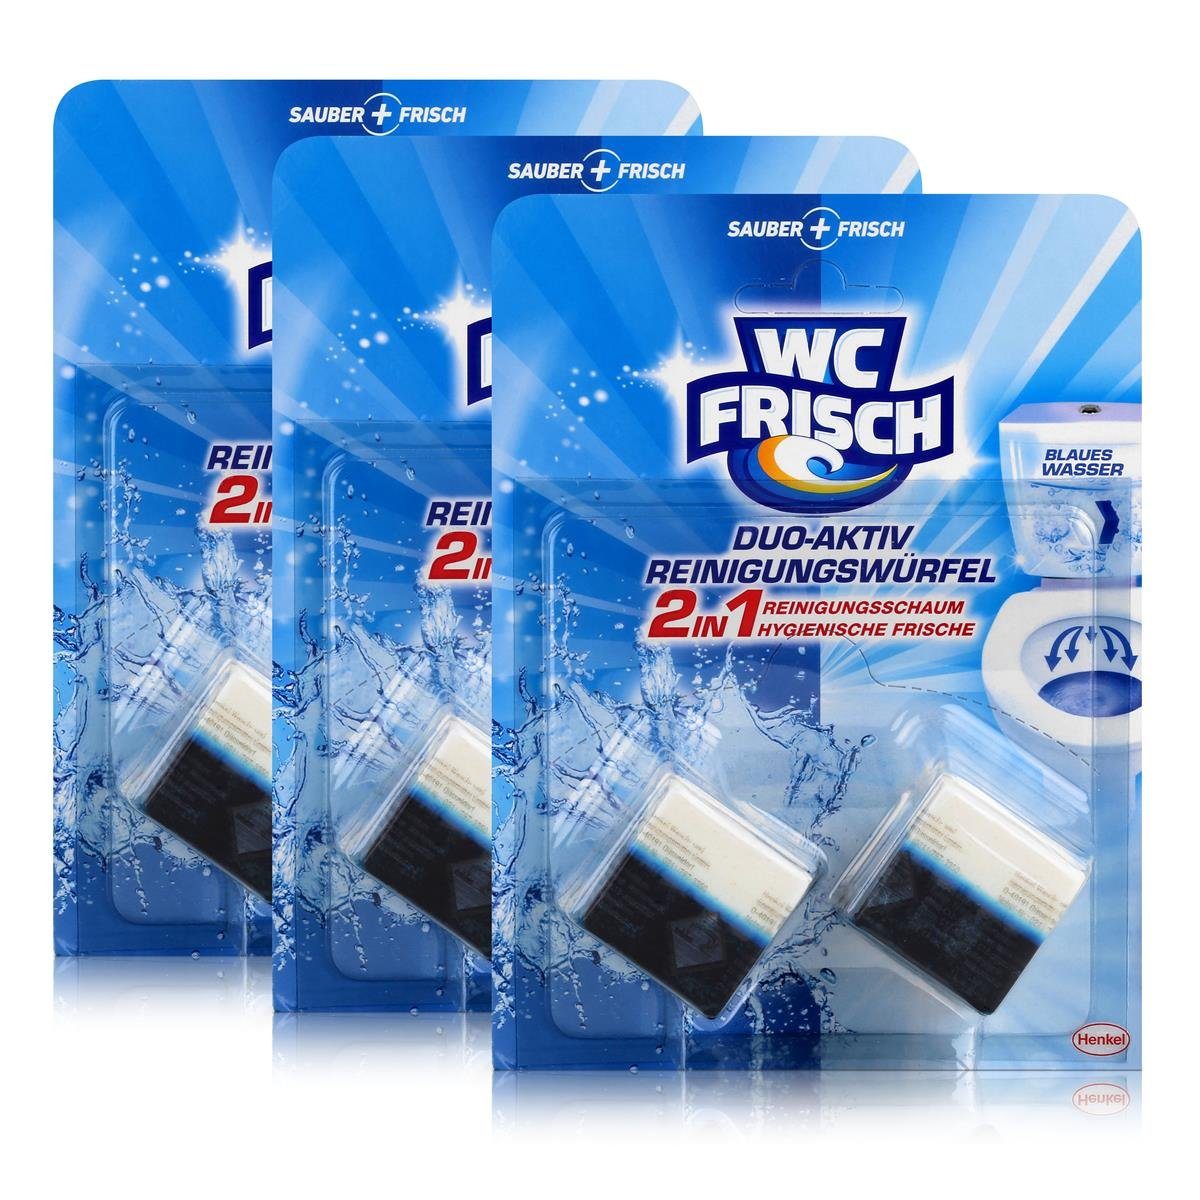 WC Frisch 3x WC Frisch Duo-Aktiv Reinigungswürfel - Verhindert Kalk & Schmutz WC-Reiniger